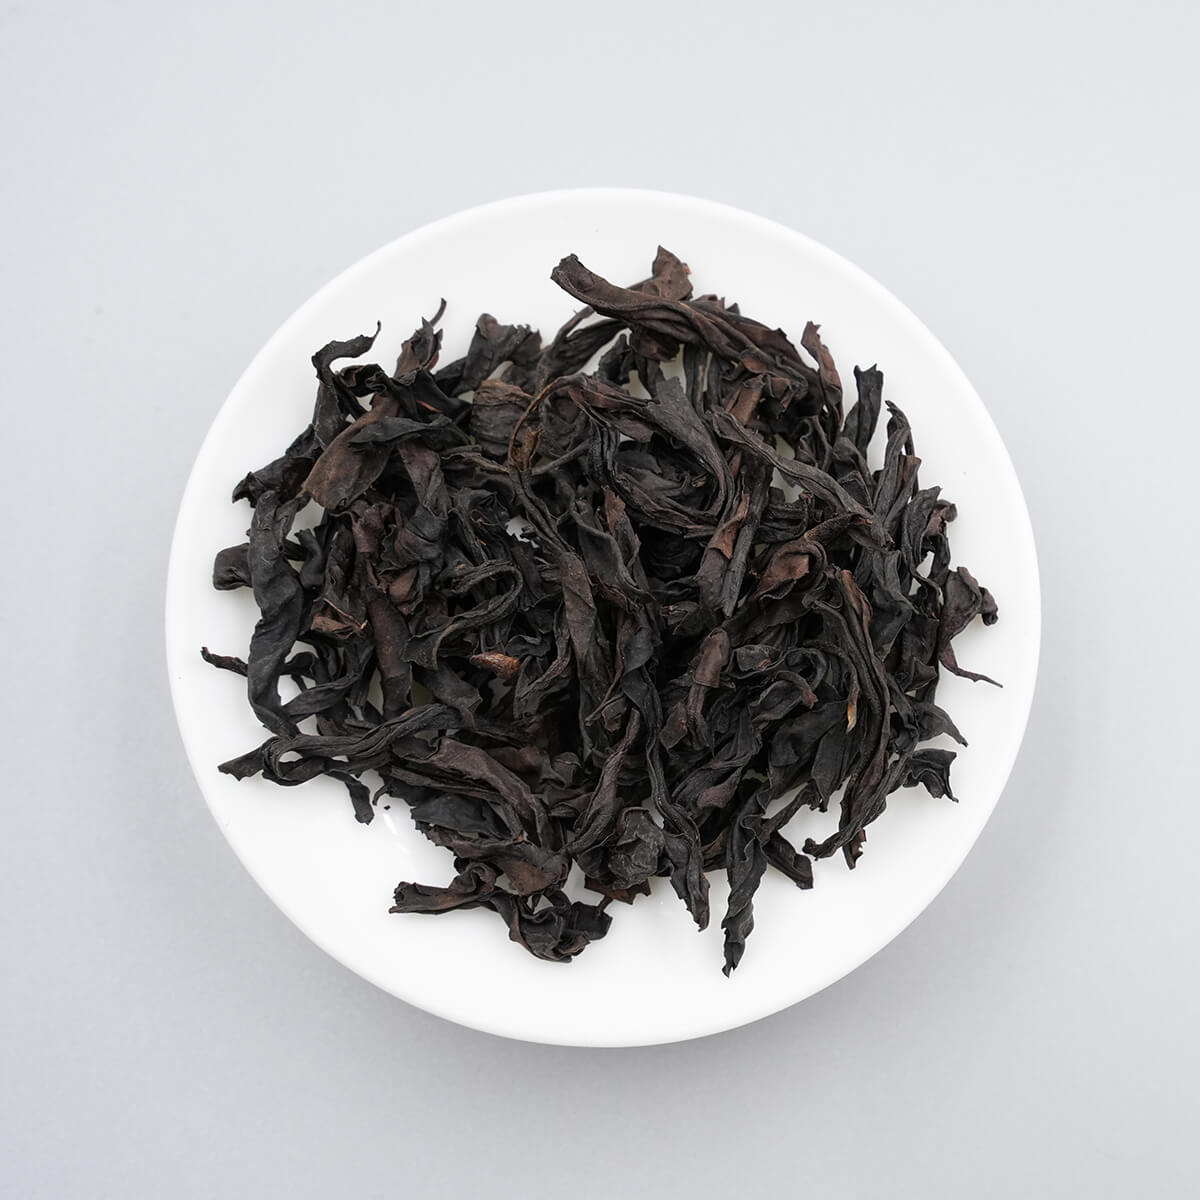 shape-of-tea-leaves-dahongpao-oolong-tea